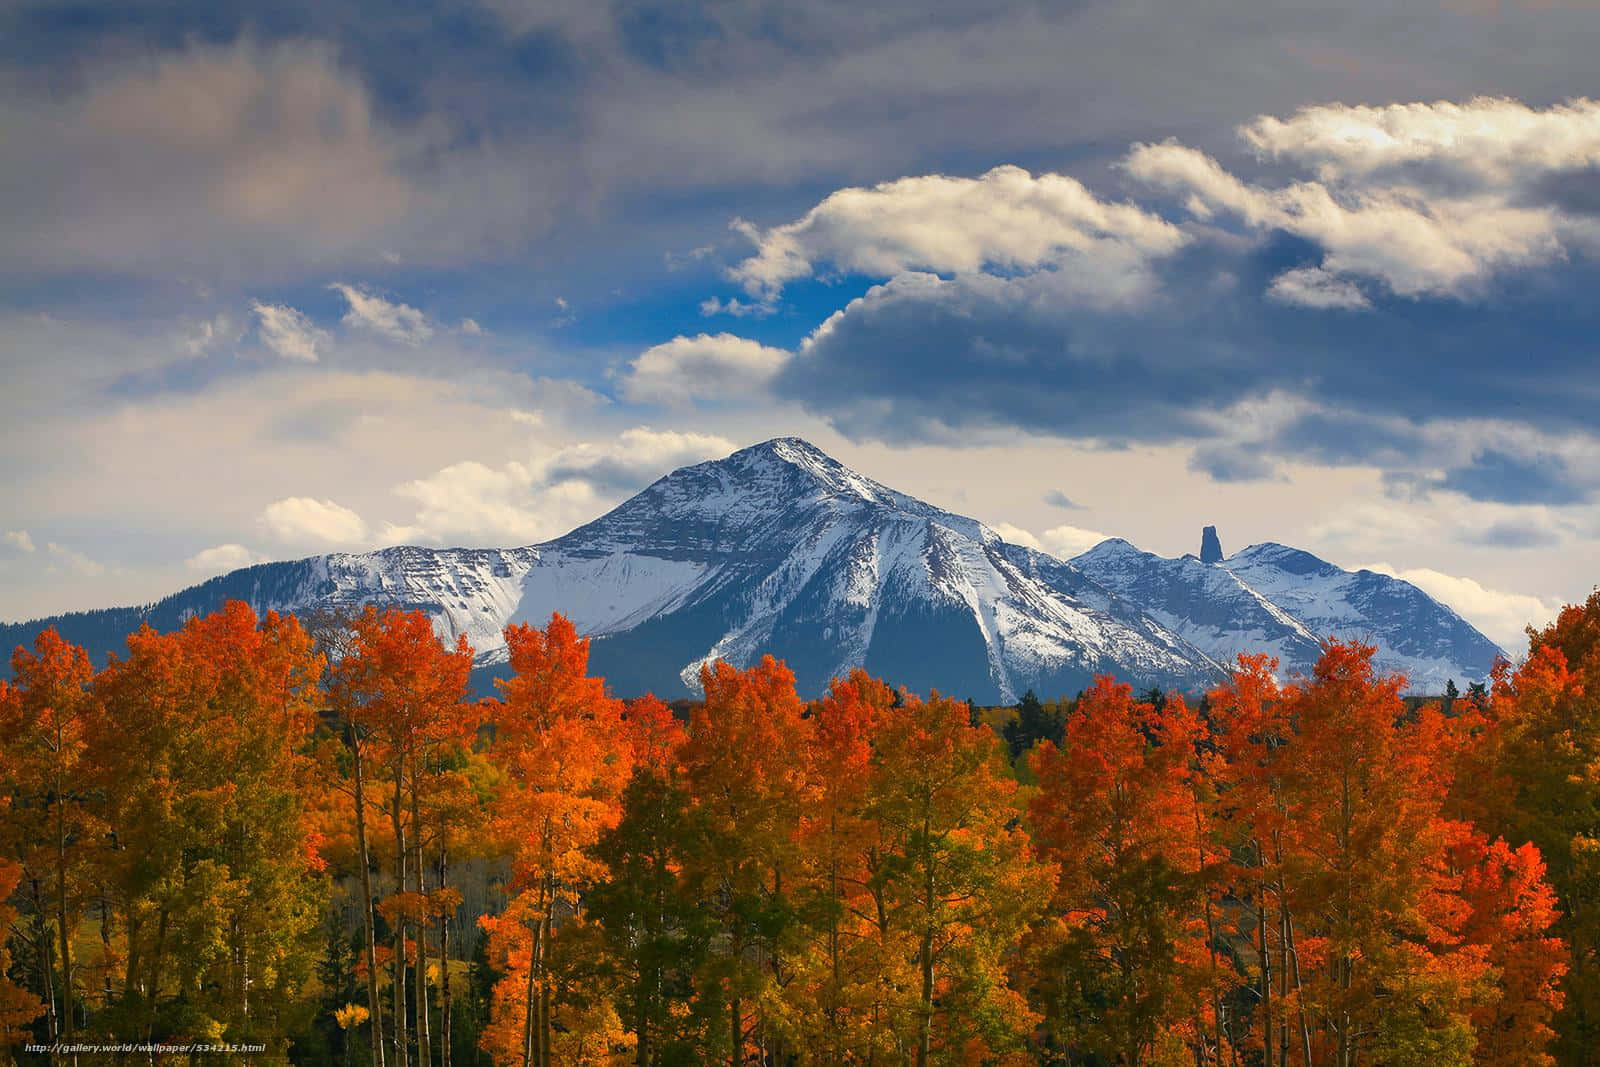 Explore the scenic mountain views when visiting Aspen, Colorado